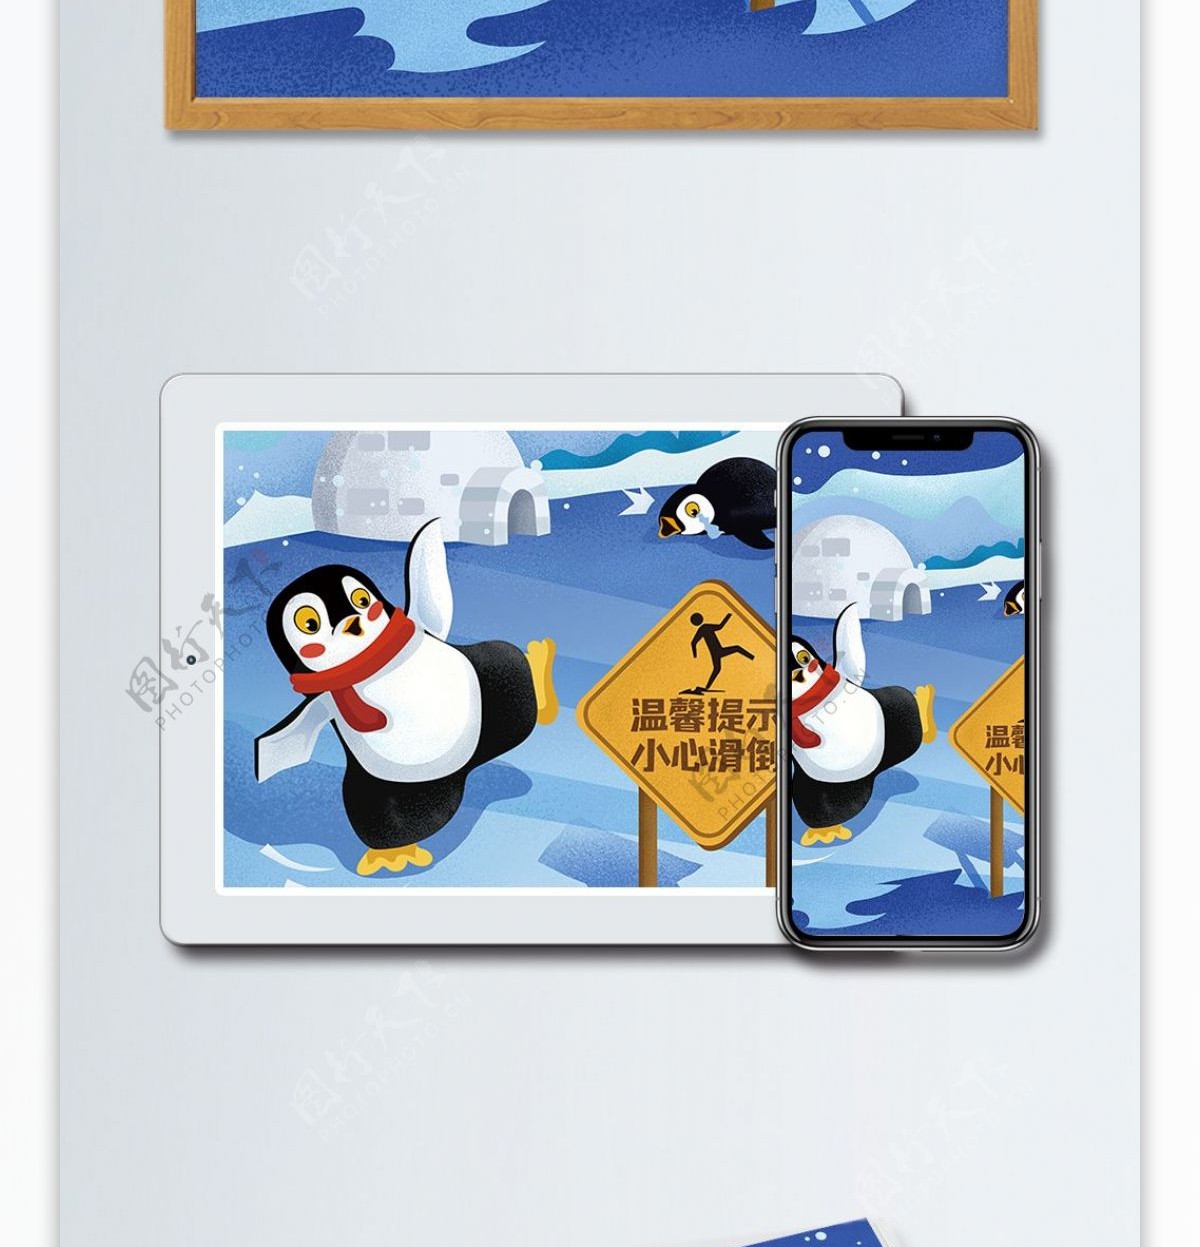 温馨提示小心滑到企鹅冰上滑倒插画